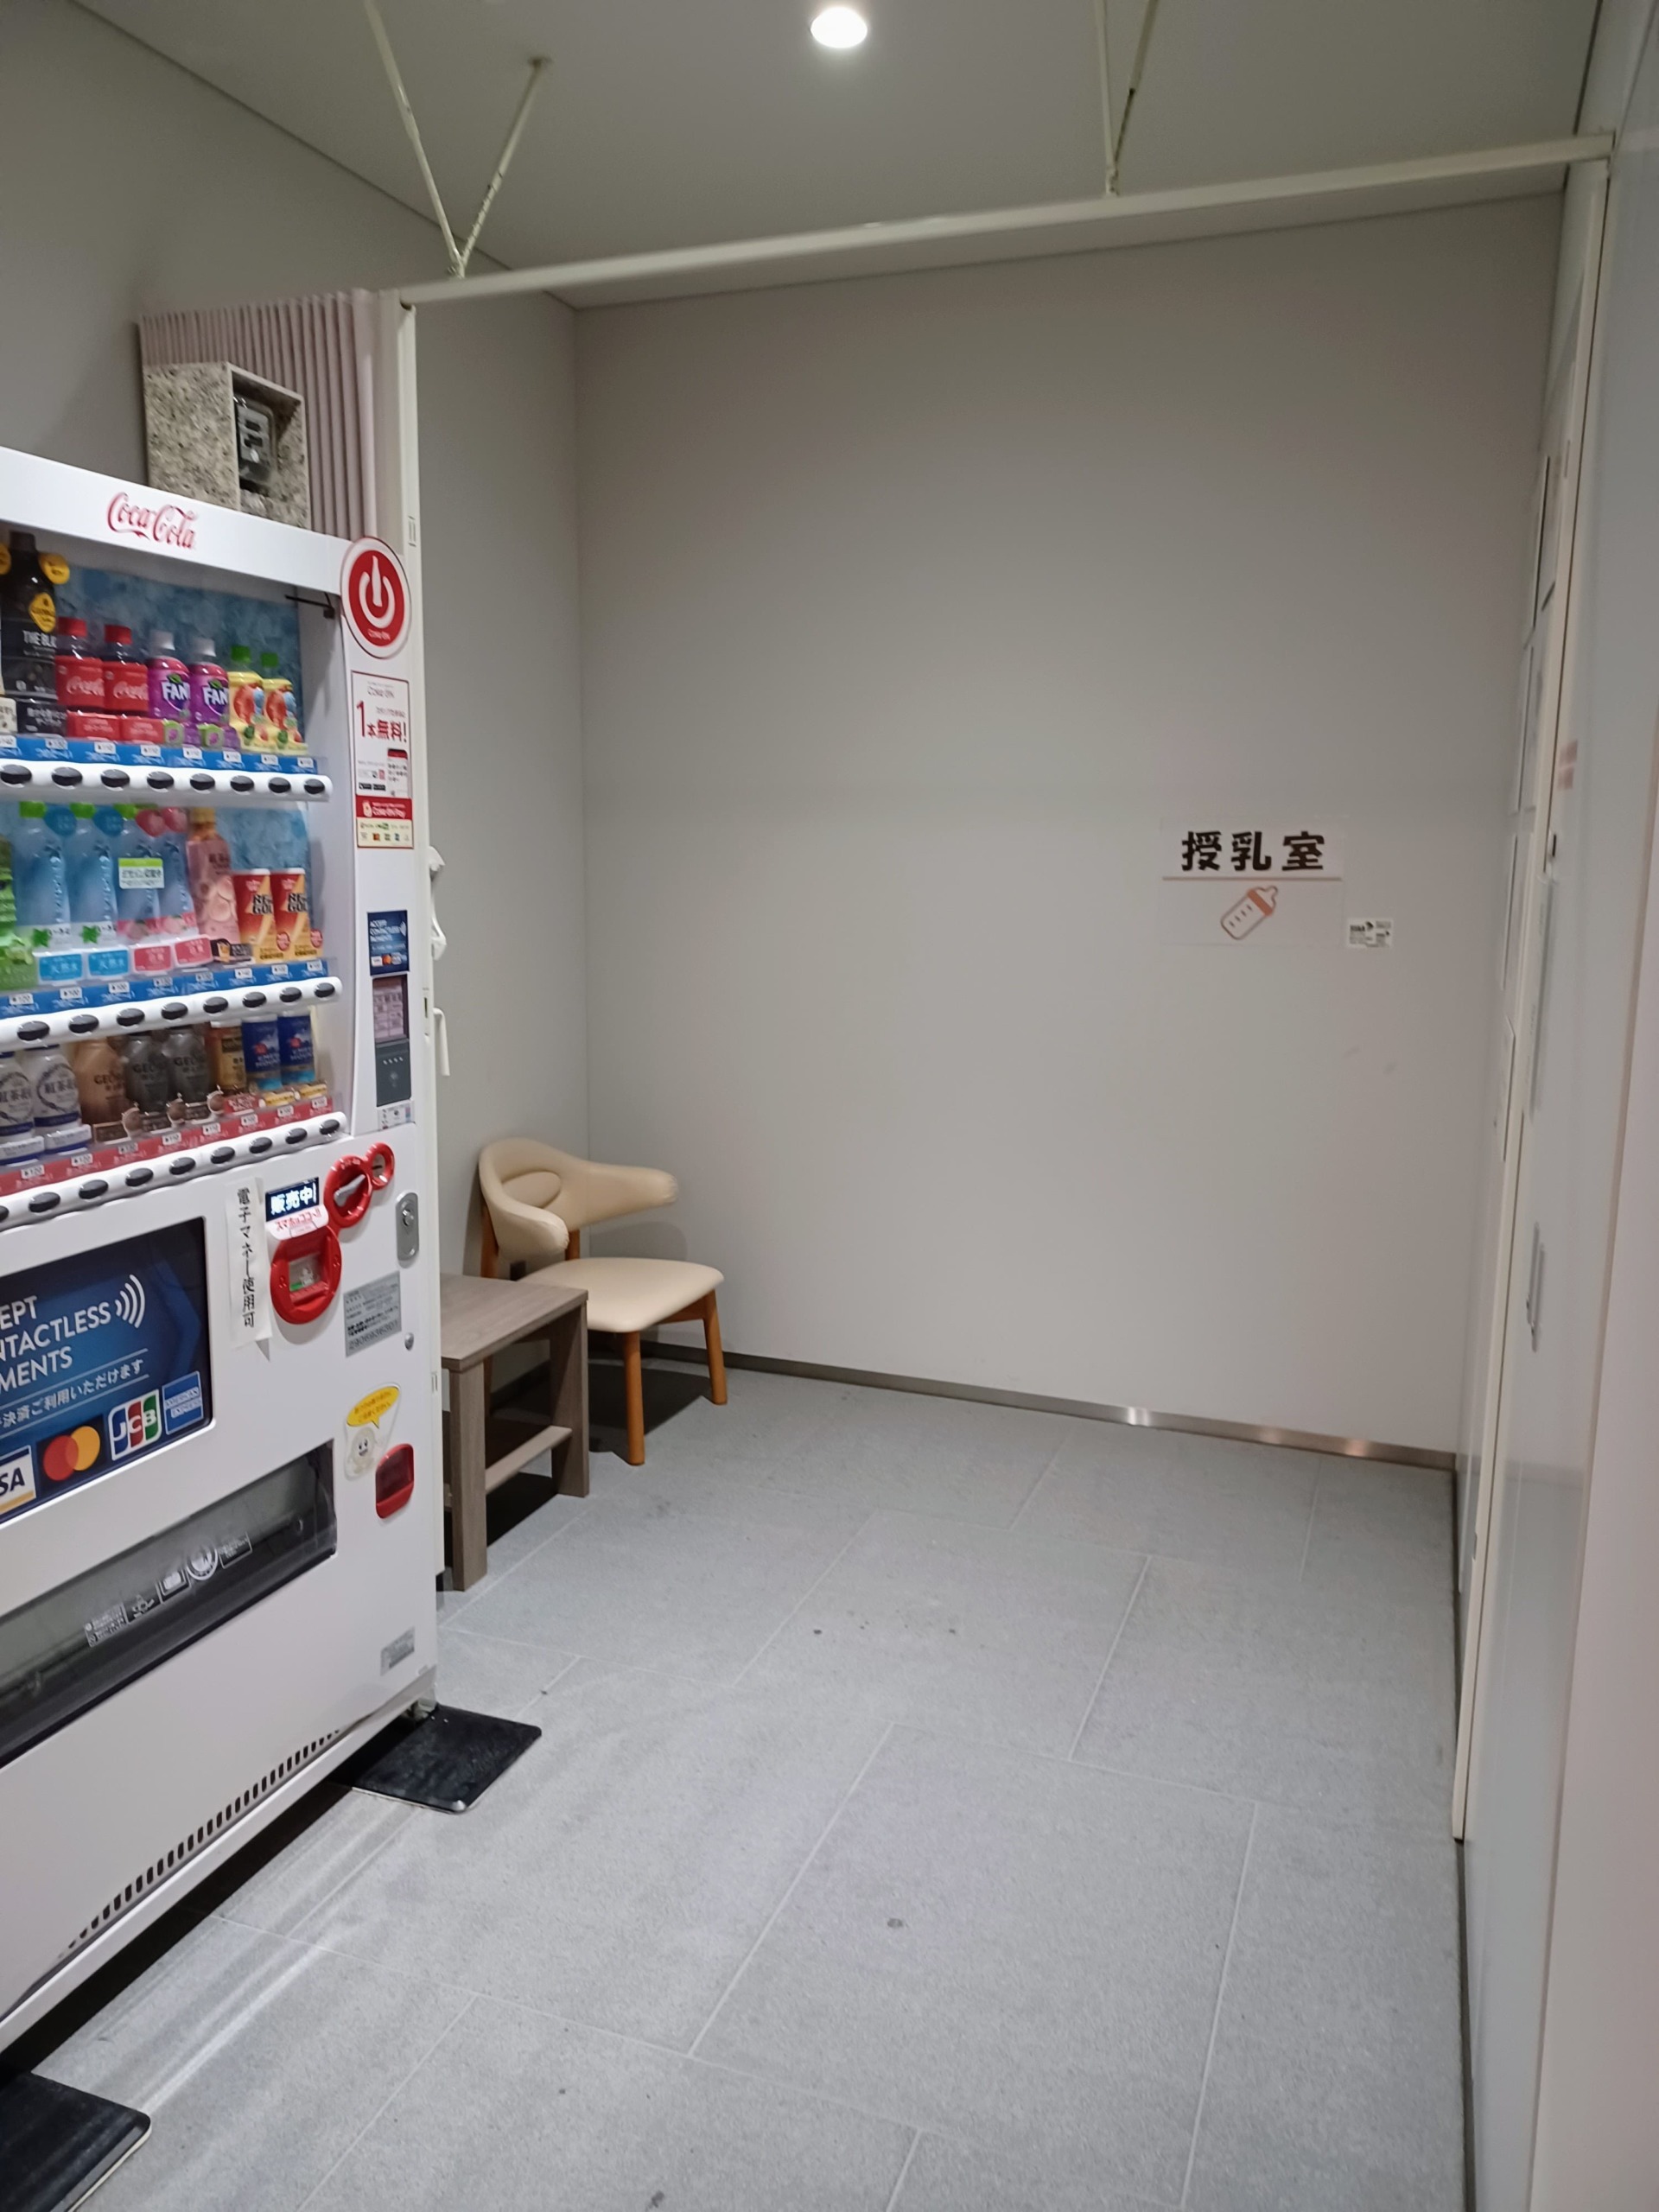 自動販売機と授乳室スペース